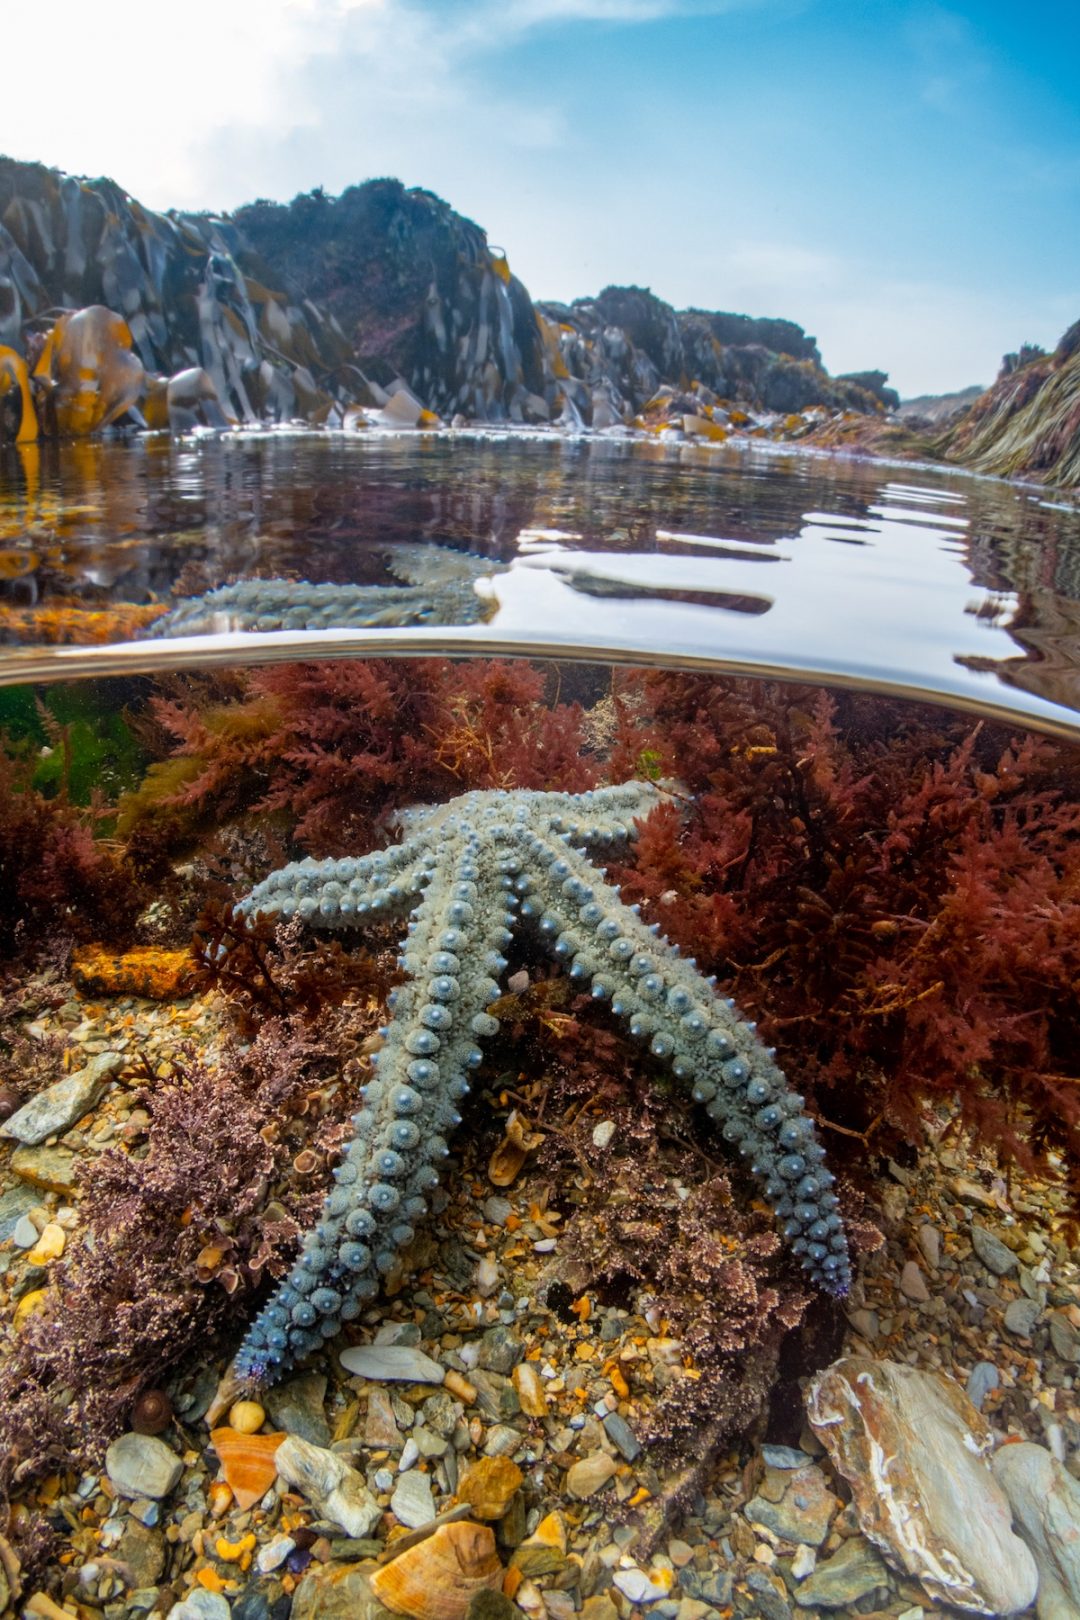 Creature fantastiche sott’acqua: i vincitori dell’Underwater Photographer of the Year 2022